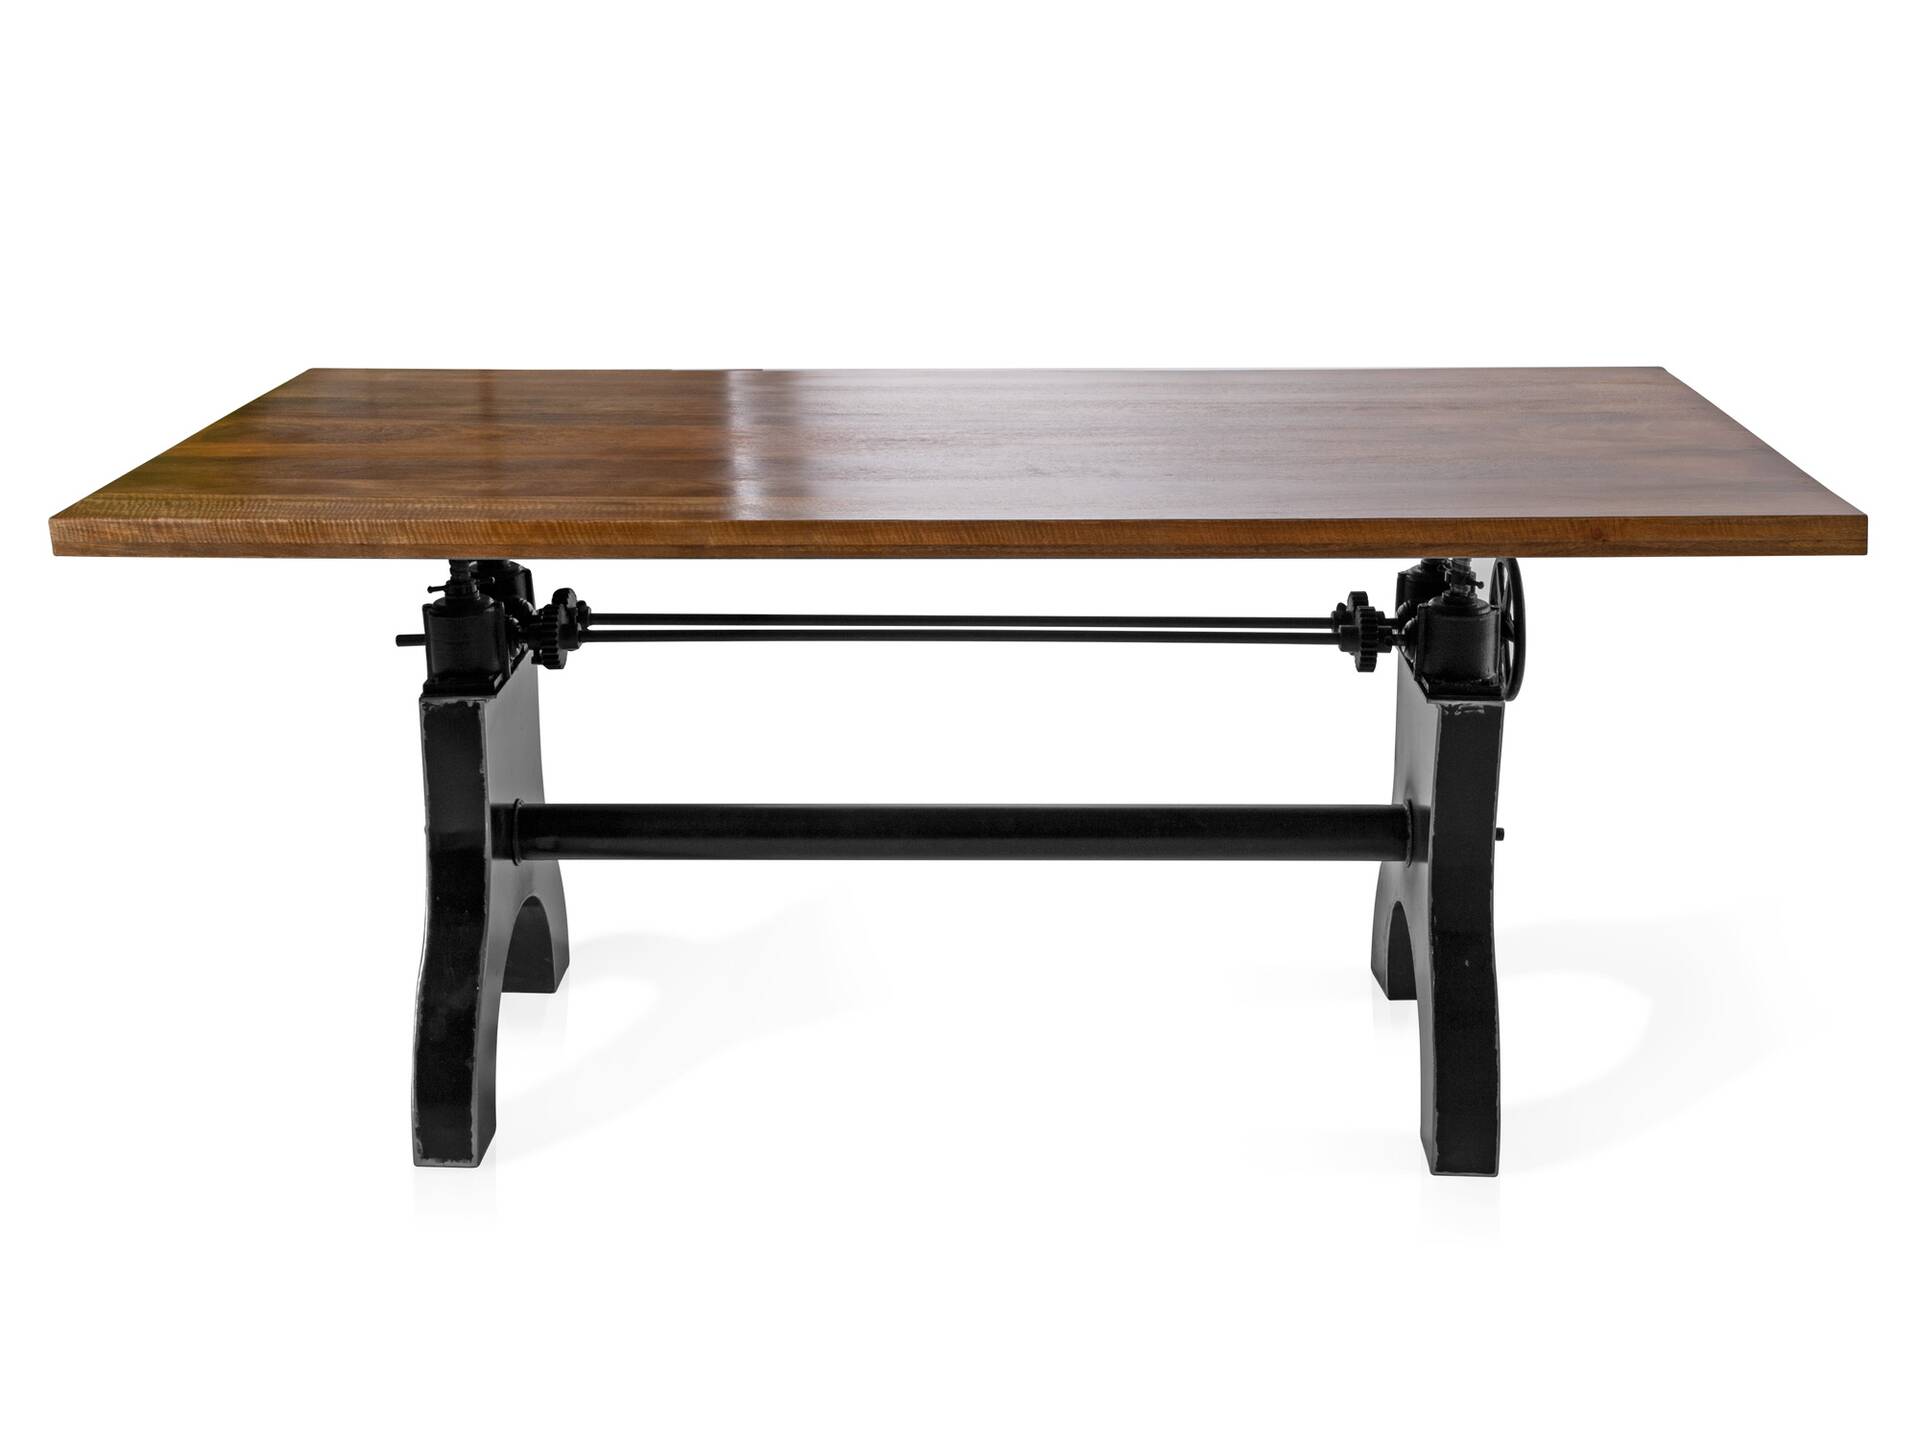 WIEN Tischgestell, Material Gusseisen 135 cm